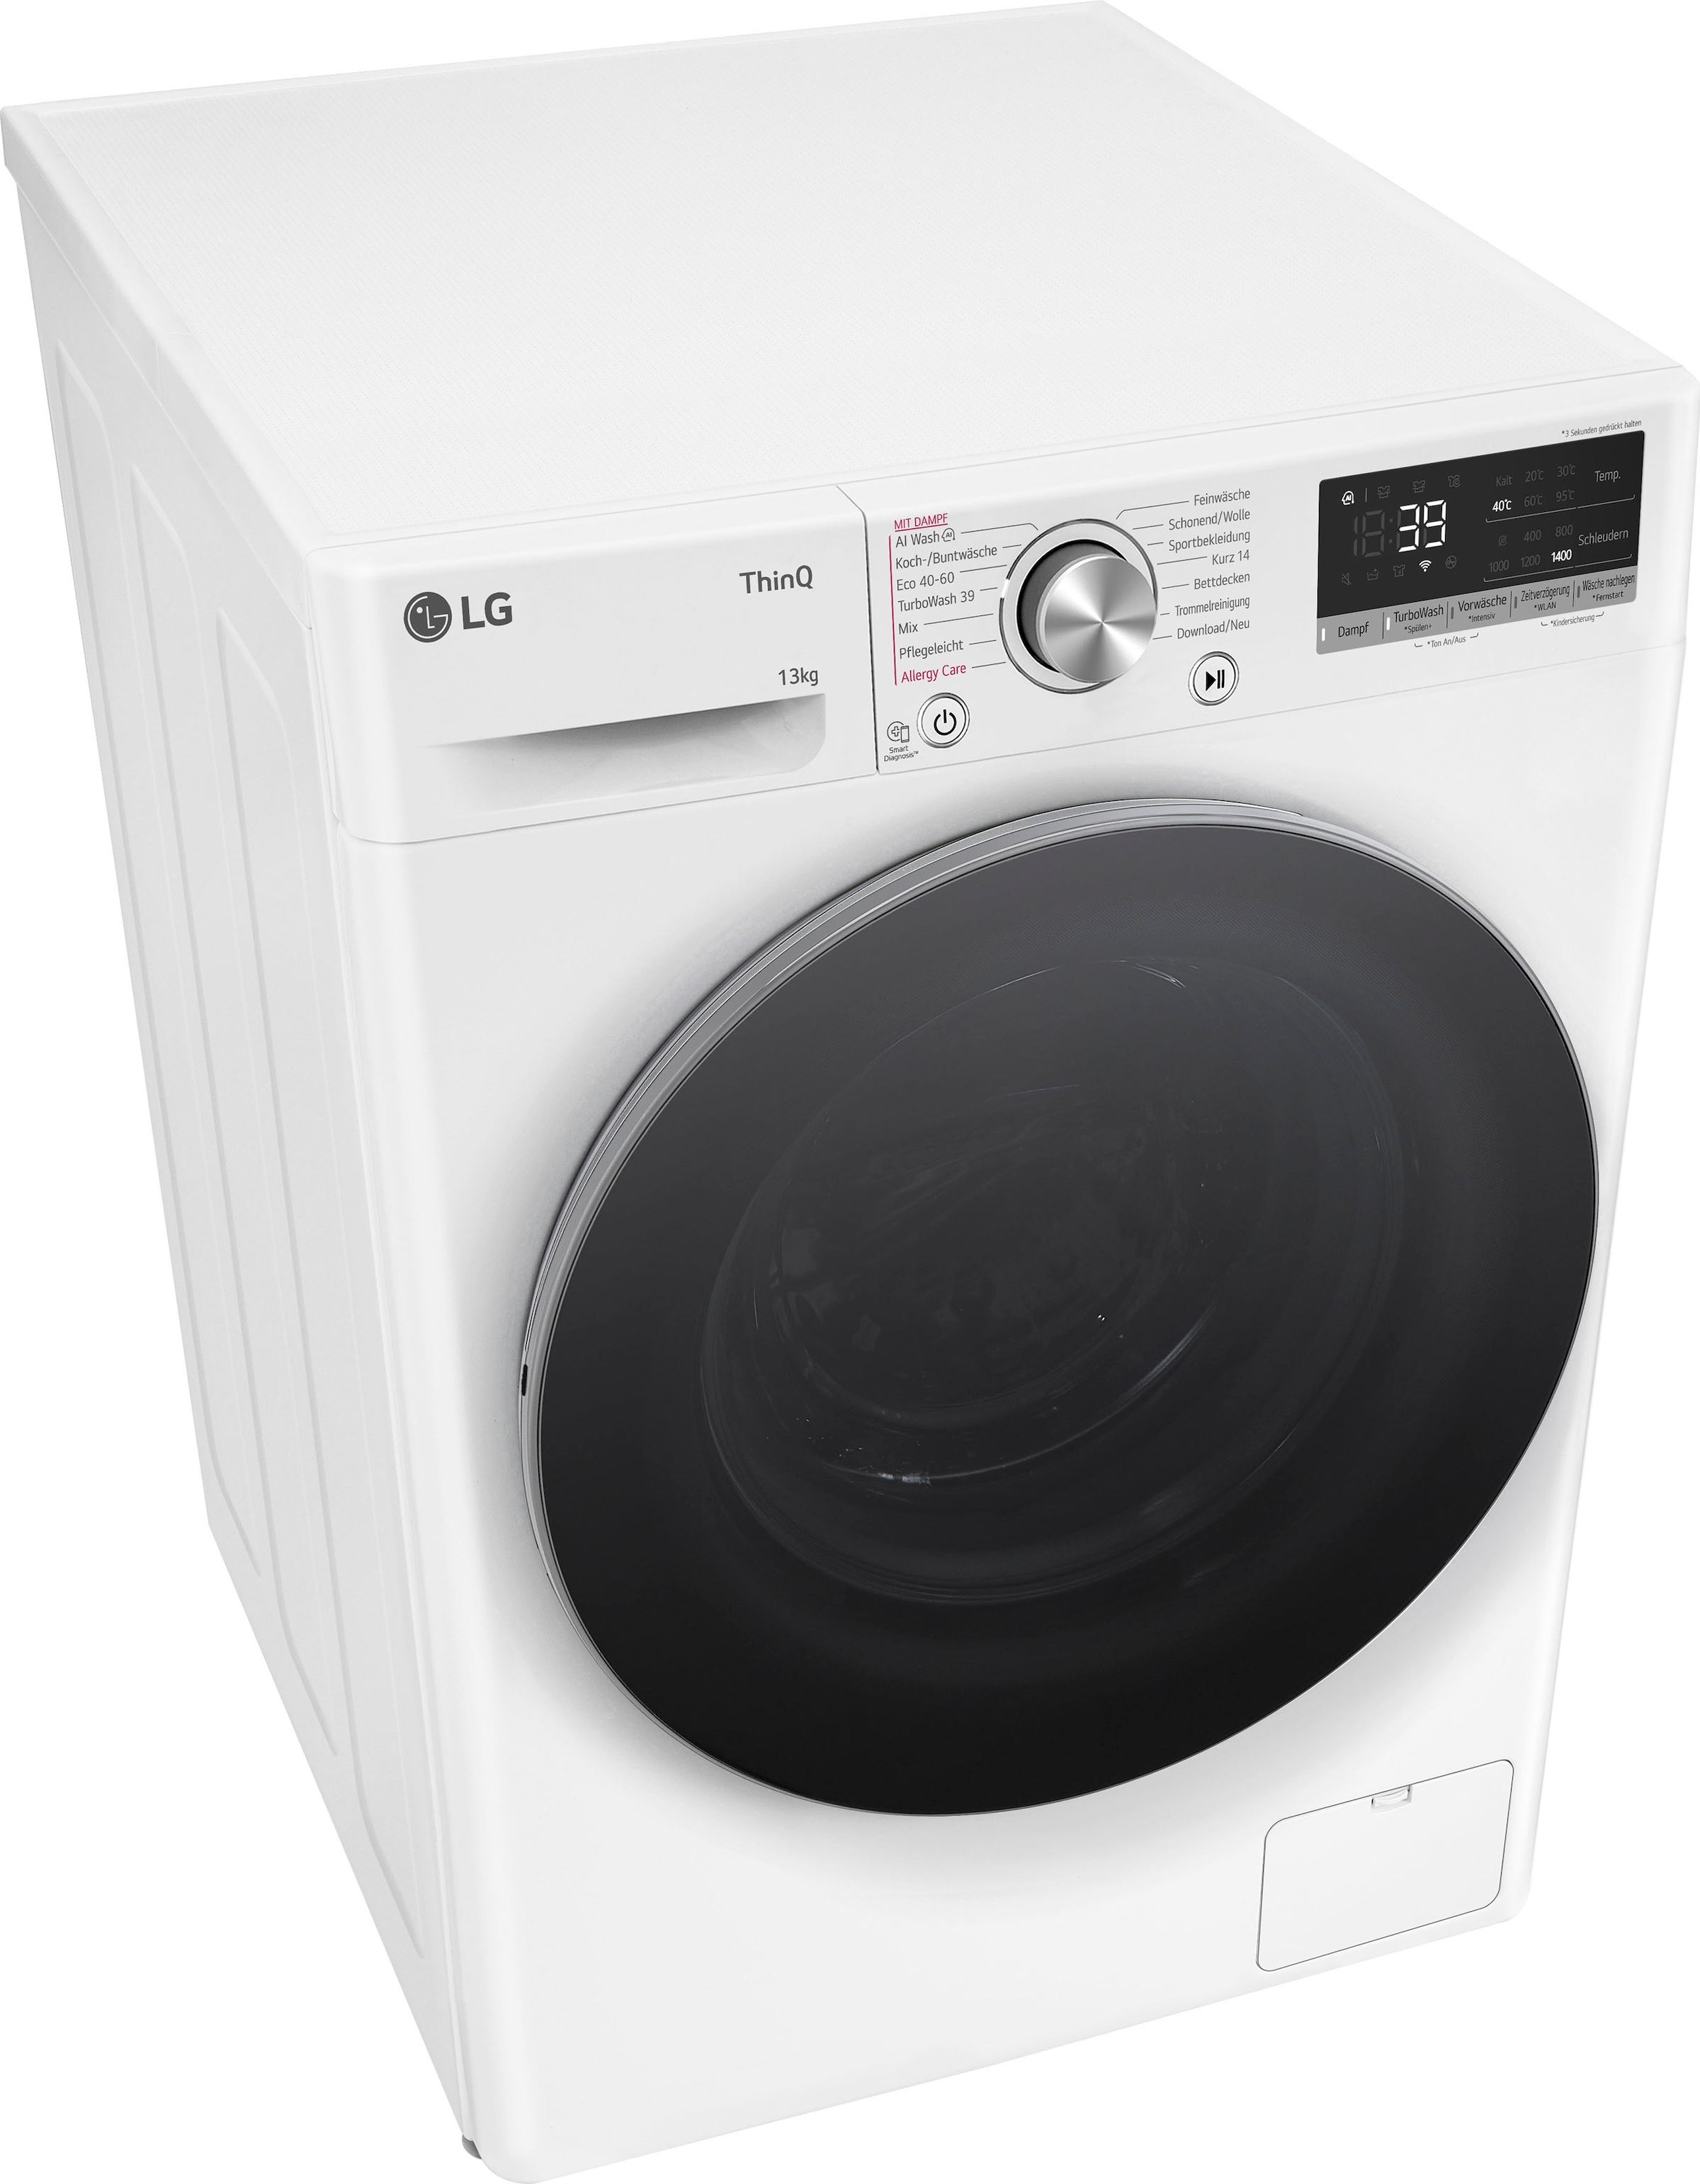 LG Waschmaschine Online Shop OTTO F4WR7031, 7, 13 kg, U/min »F4WR7031«, 1400 Serie im